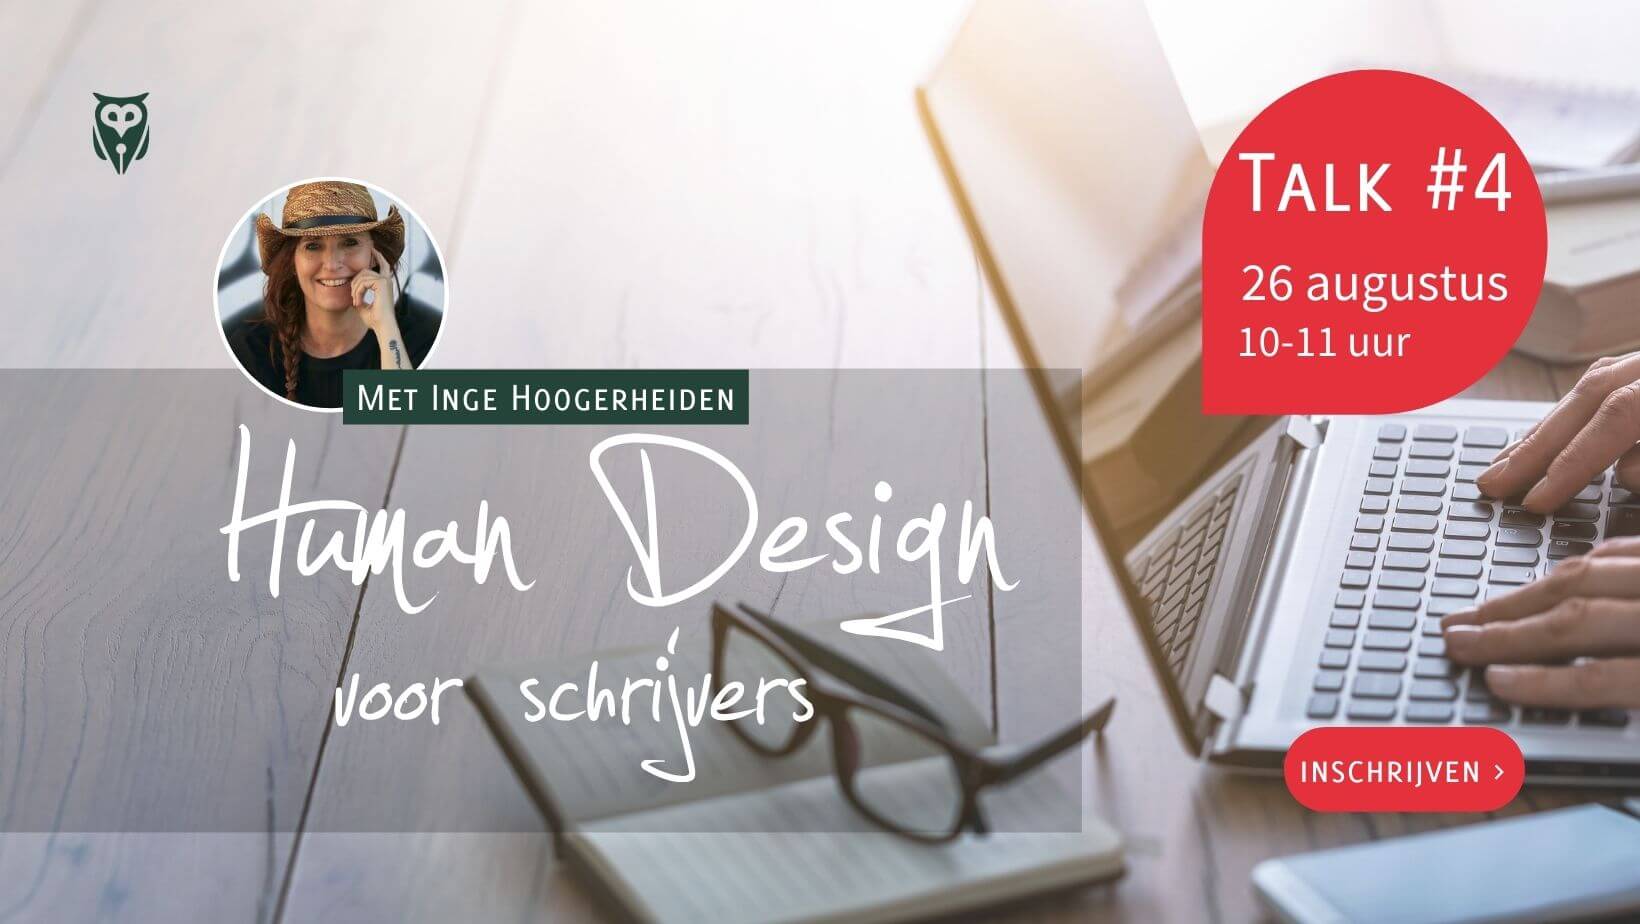 Schrijf je in voor de Book Talk met Inge Hoogerheiden over Human Design voor schrijvers